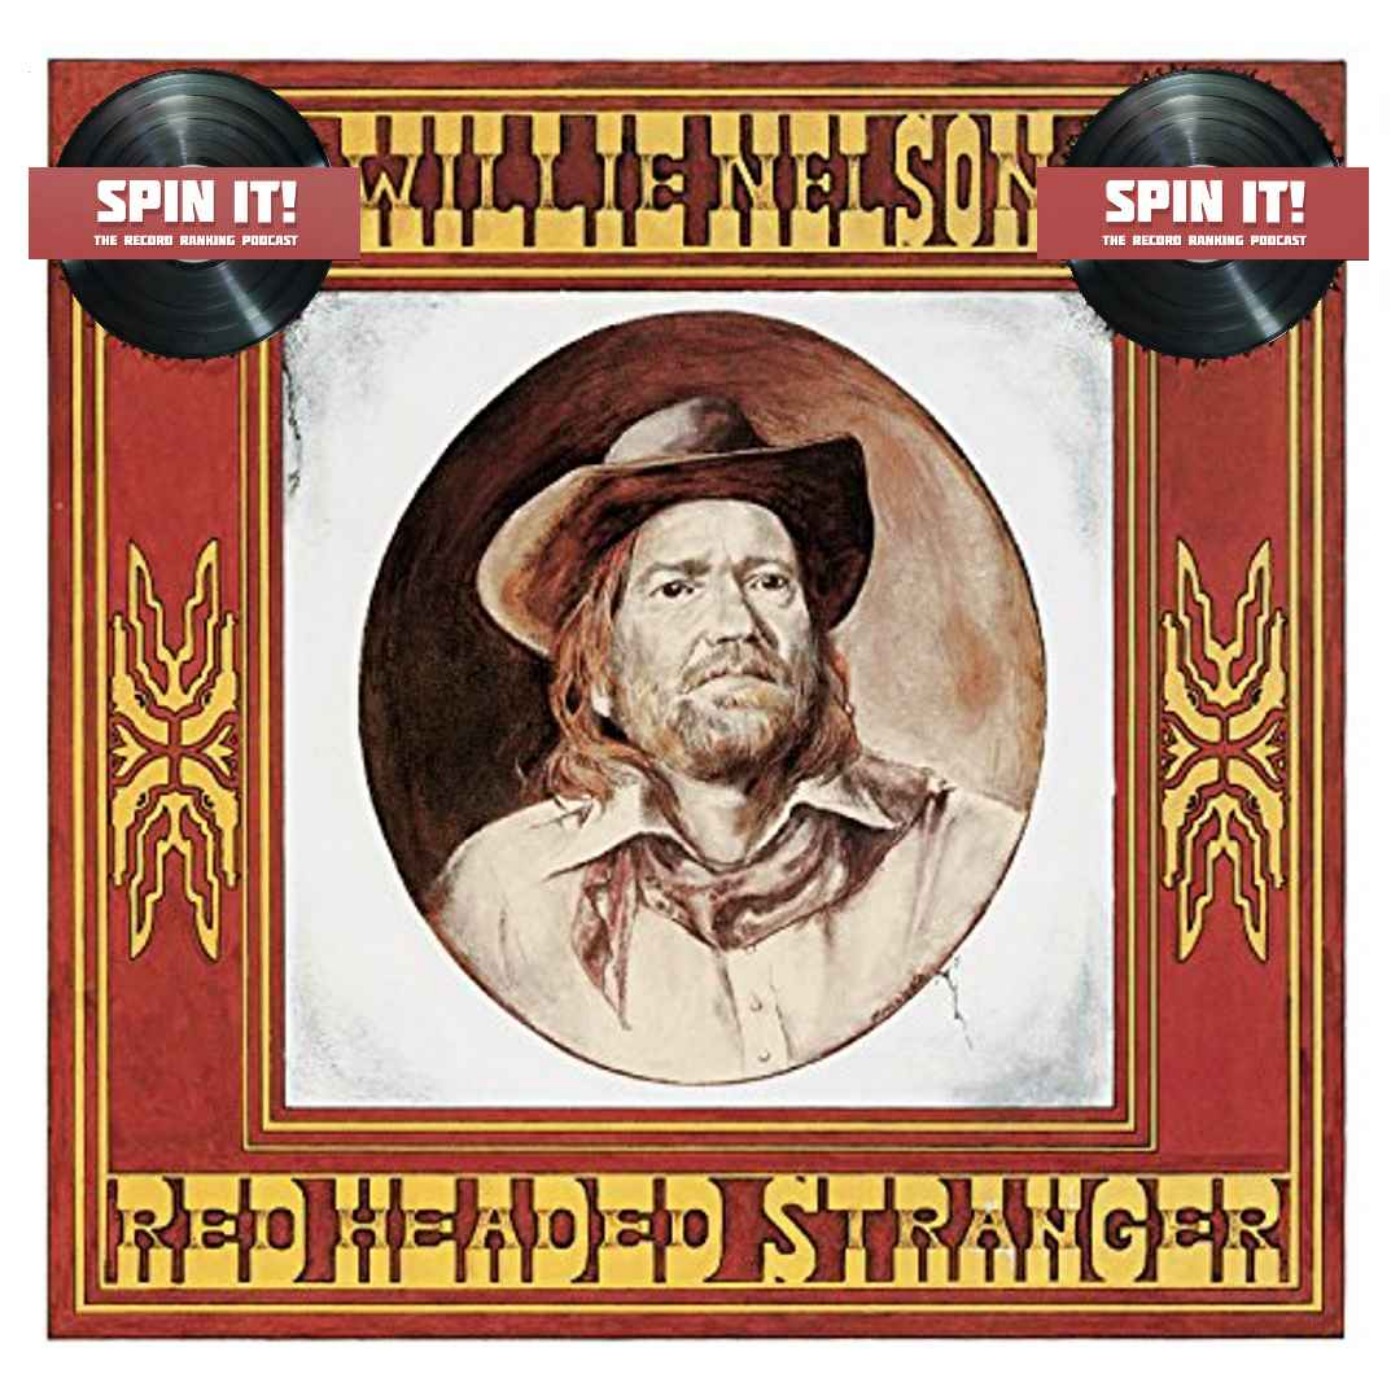 Red Headed Stranger - Willie Nelson: Episode 78